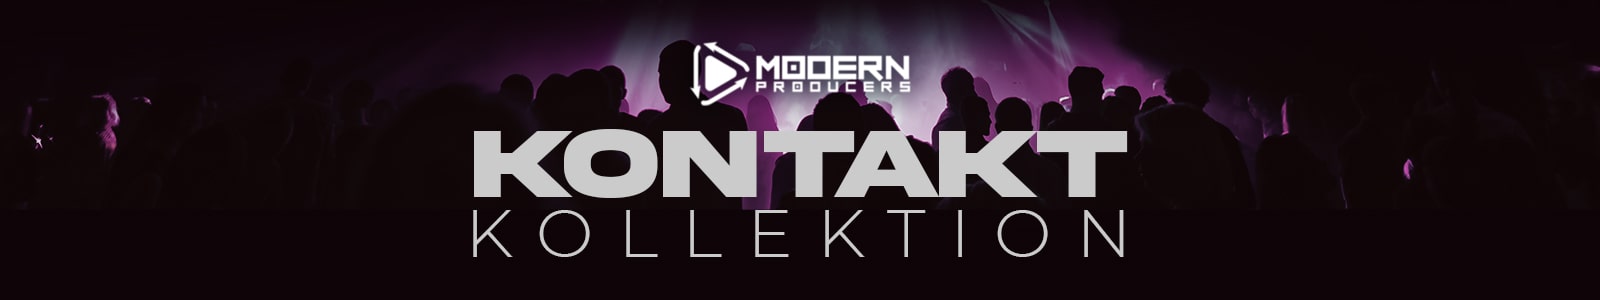 Kontakt Kollektion by Modern Producers